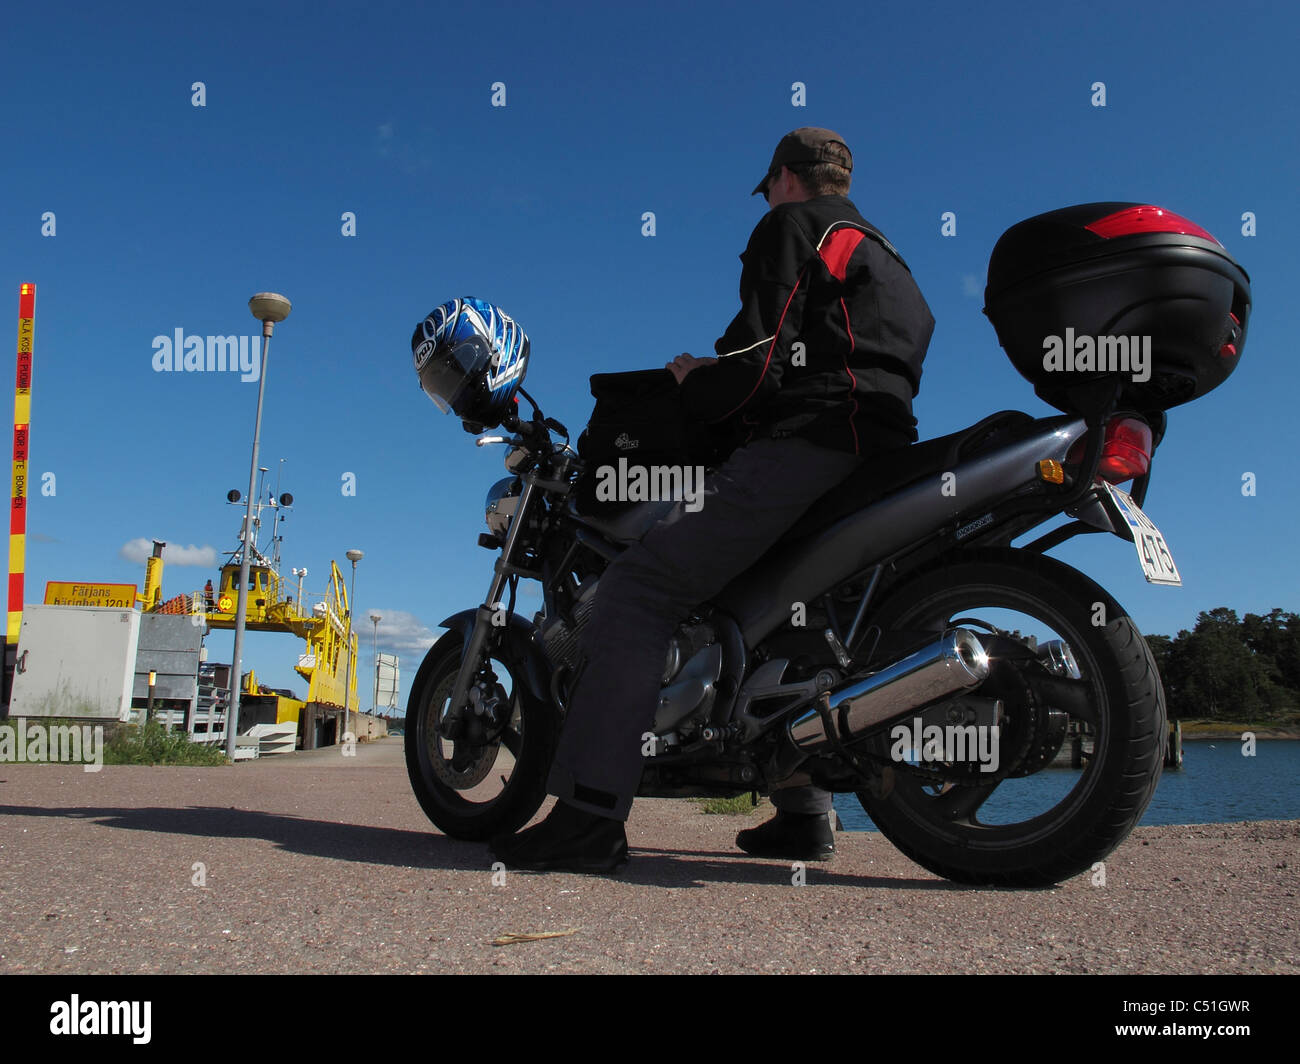 L'archipel de Turku Finlande Scandinavie. Homme avec moto en attendant de charger dans le ferry Banque D'Images